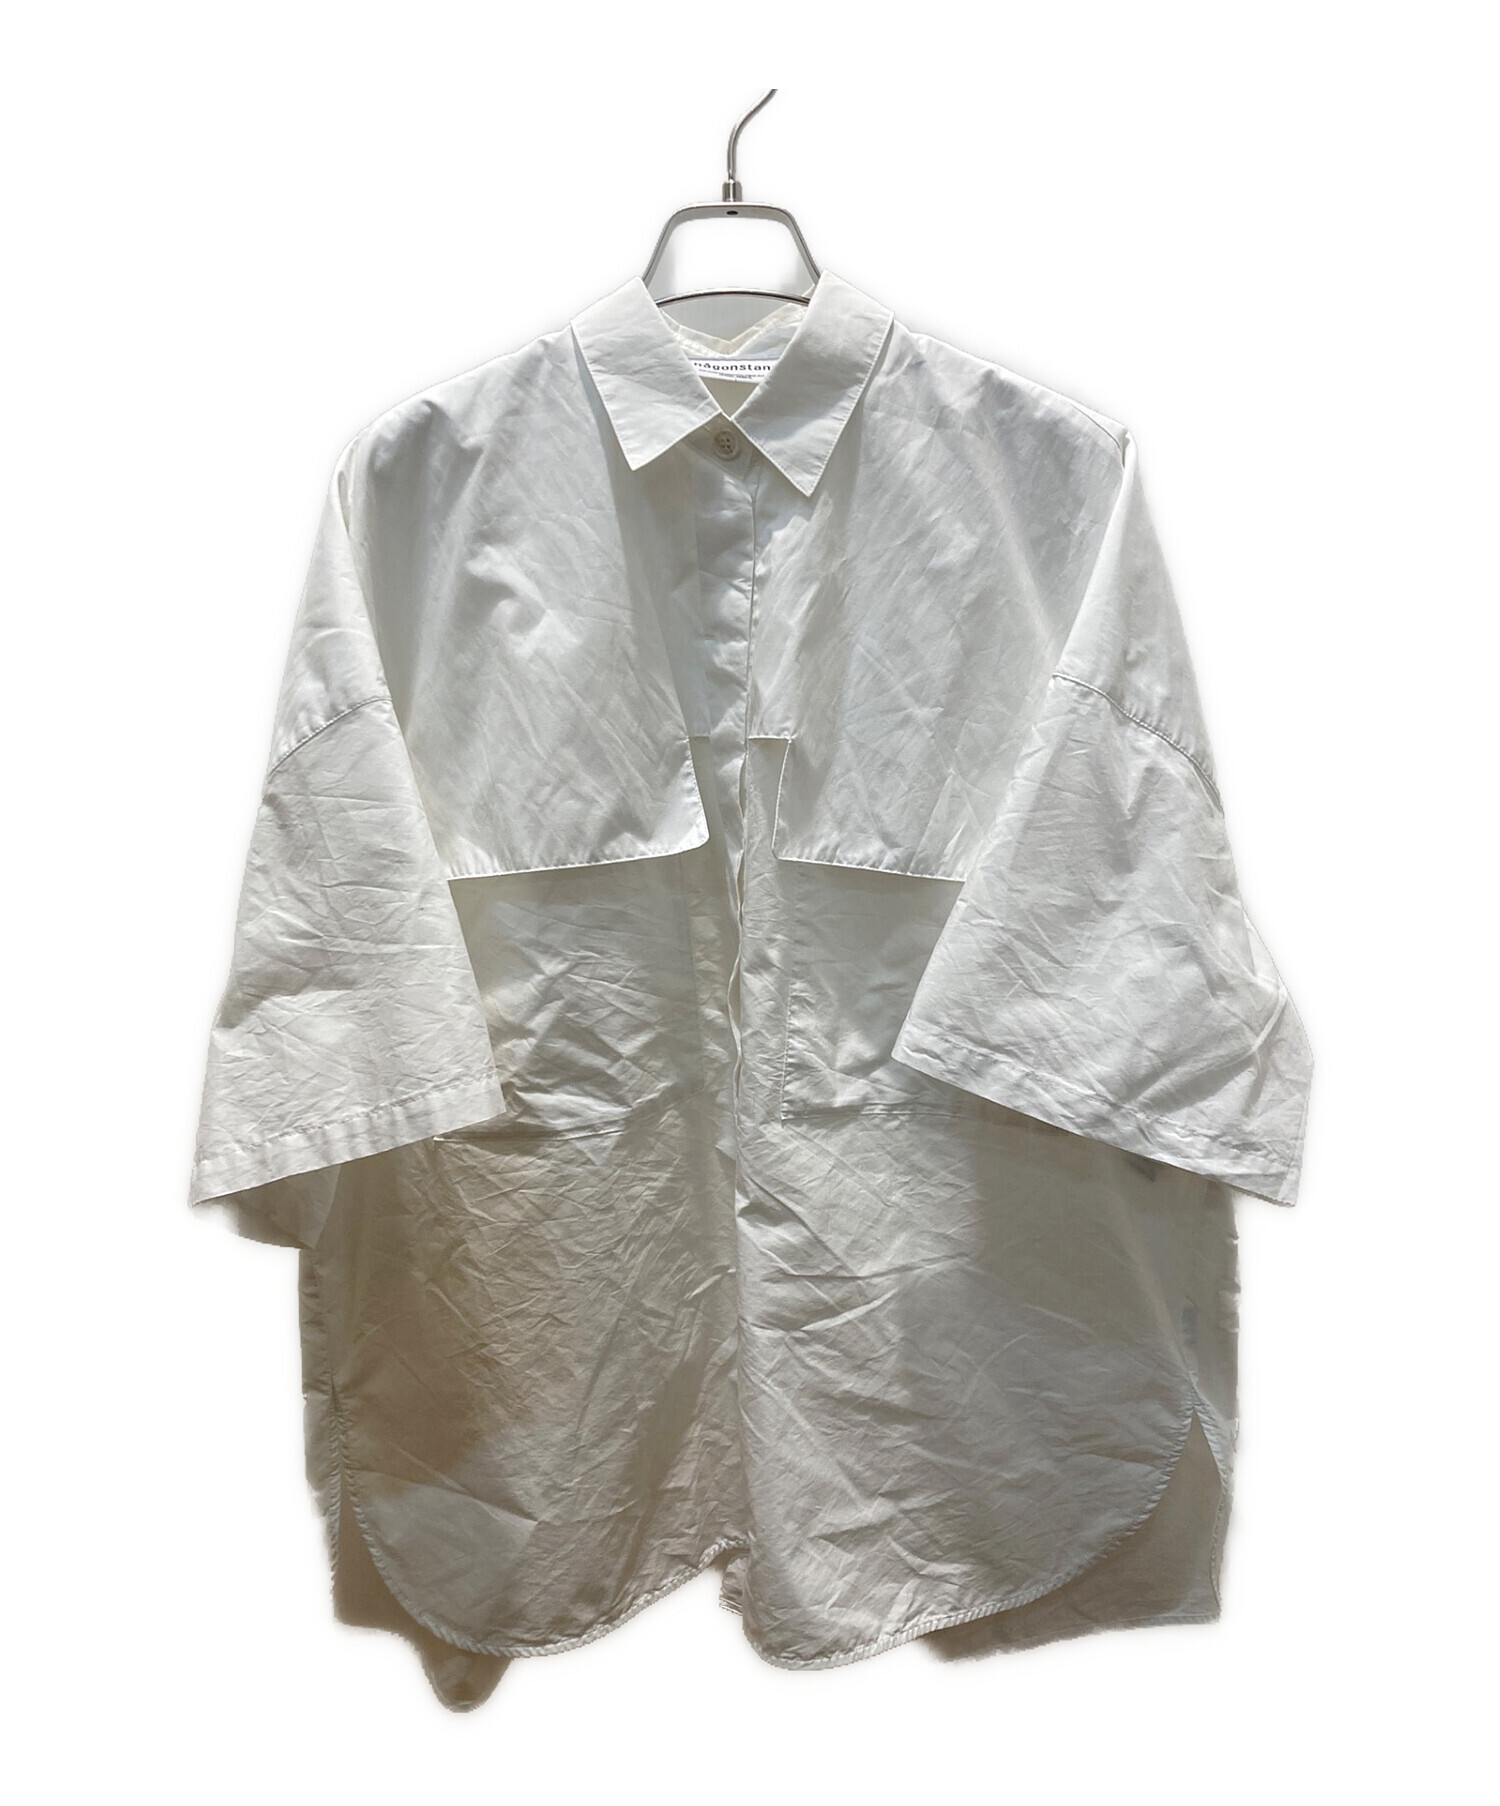 nagonstans (ナゴンスタンス) Ecoタイプライター ポケット5分袖shirt ホワイト サイズ:M